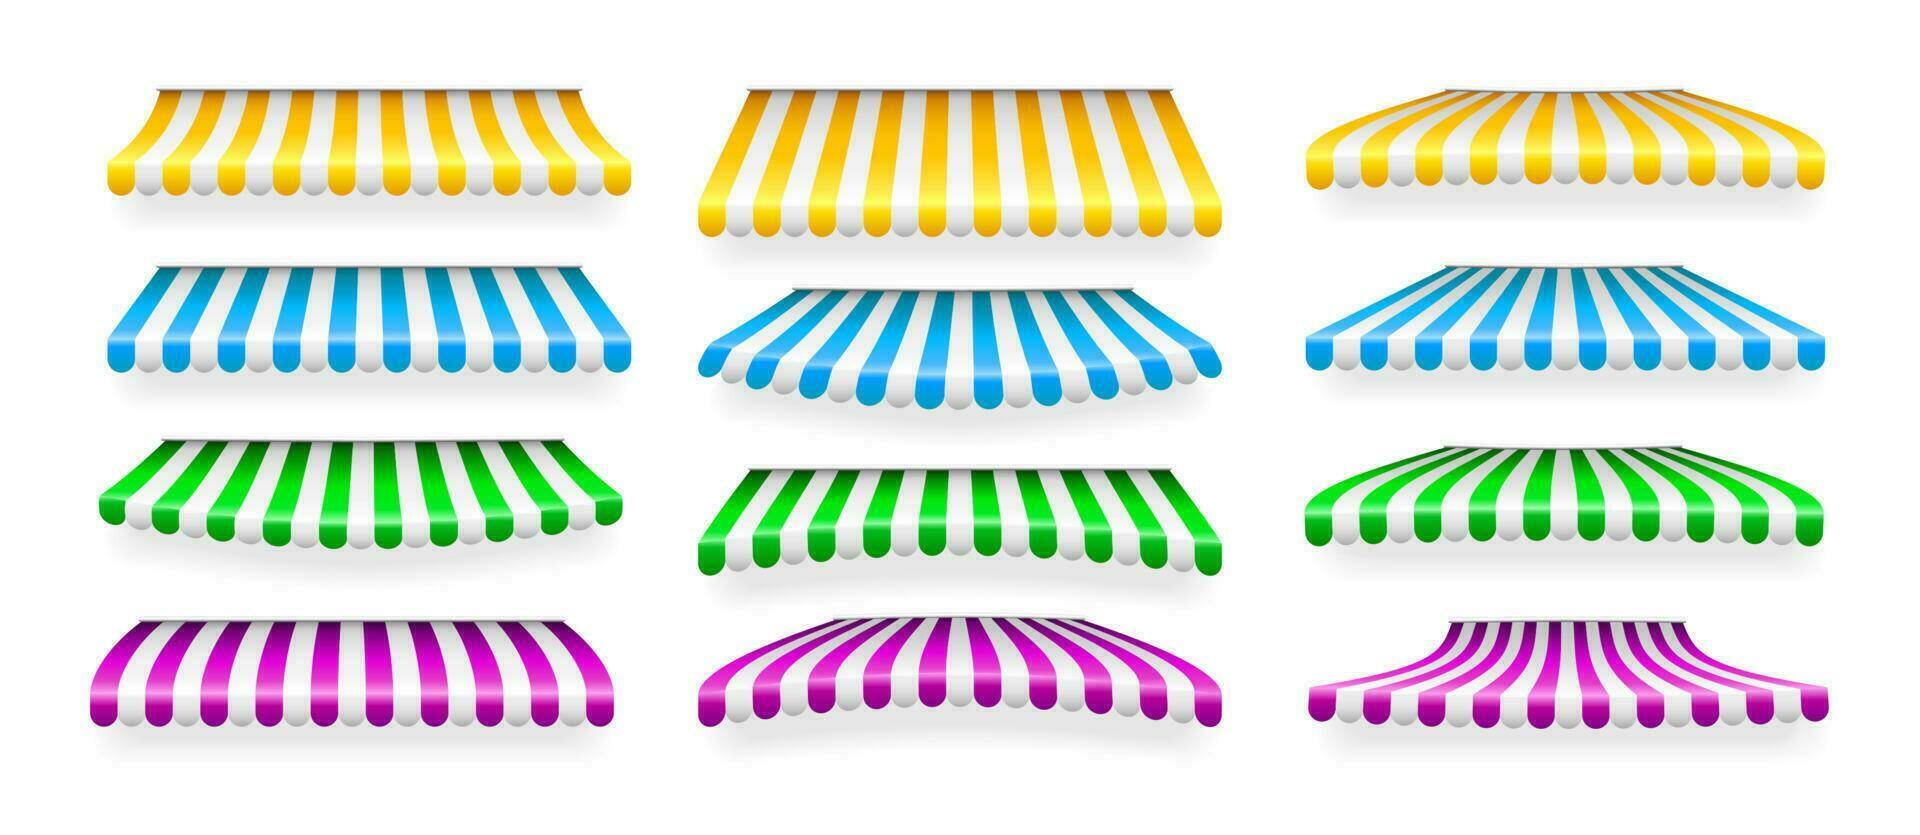 realistico a strisce negozio parasole. memorizzare tenda da sole. negozio tenda isolato impostare. vettore illustrazione